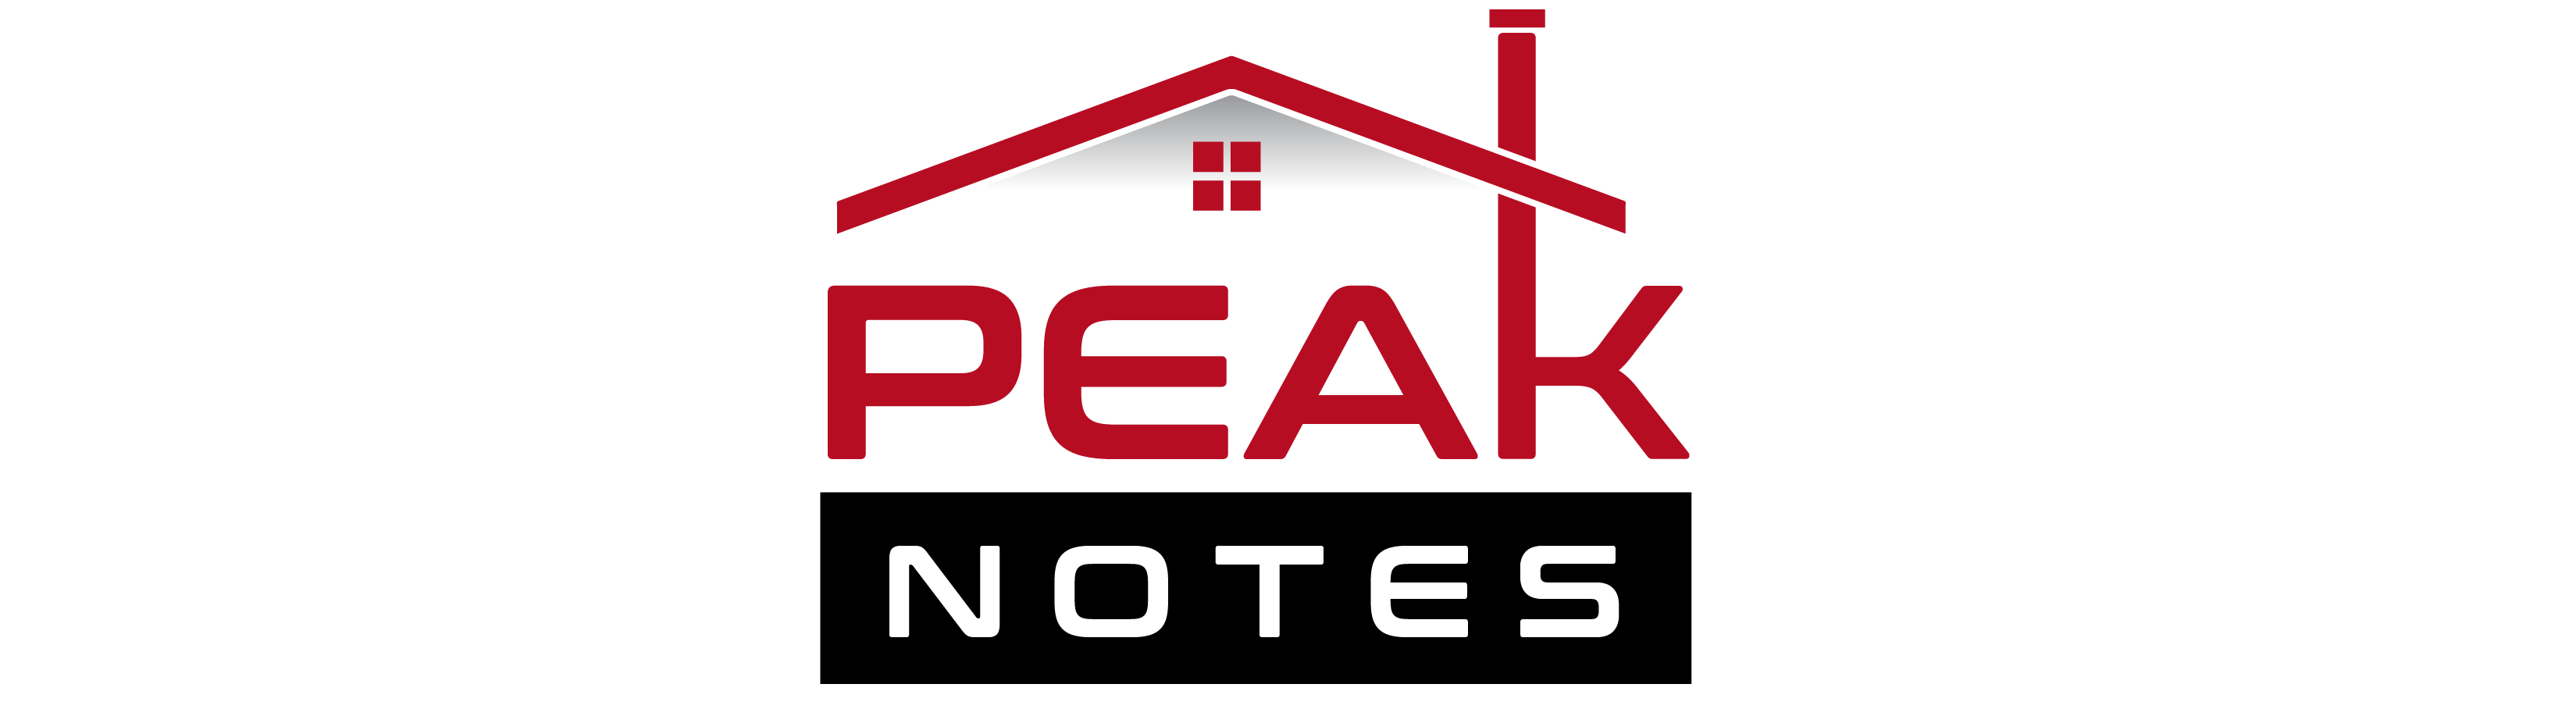 Peak Notes